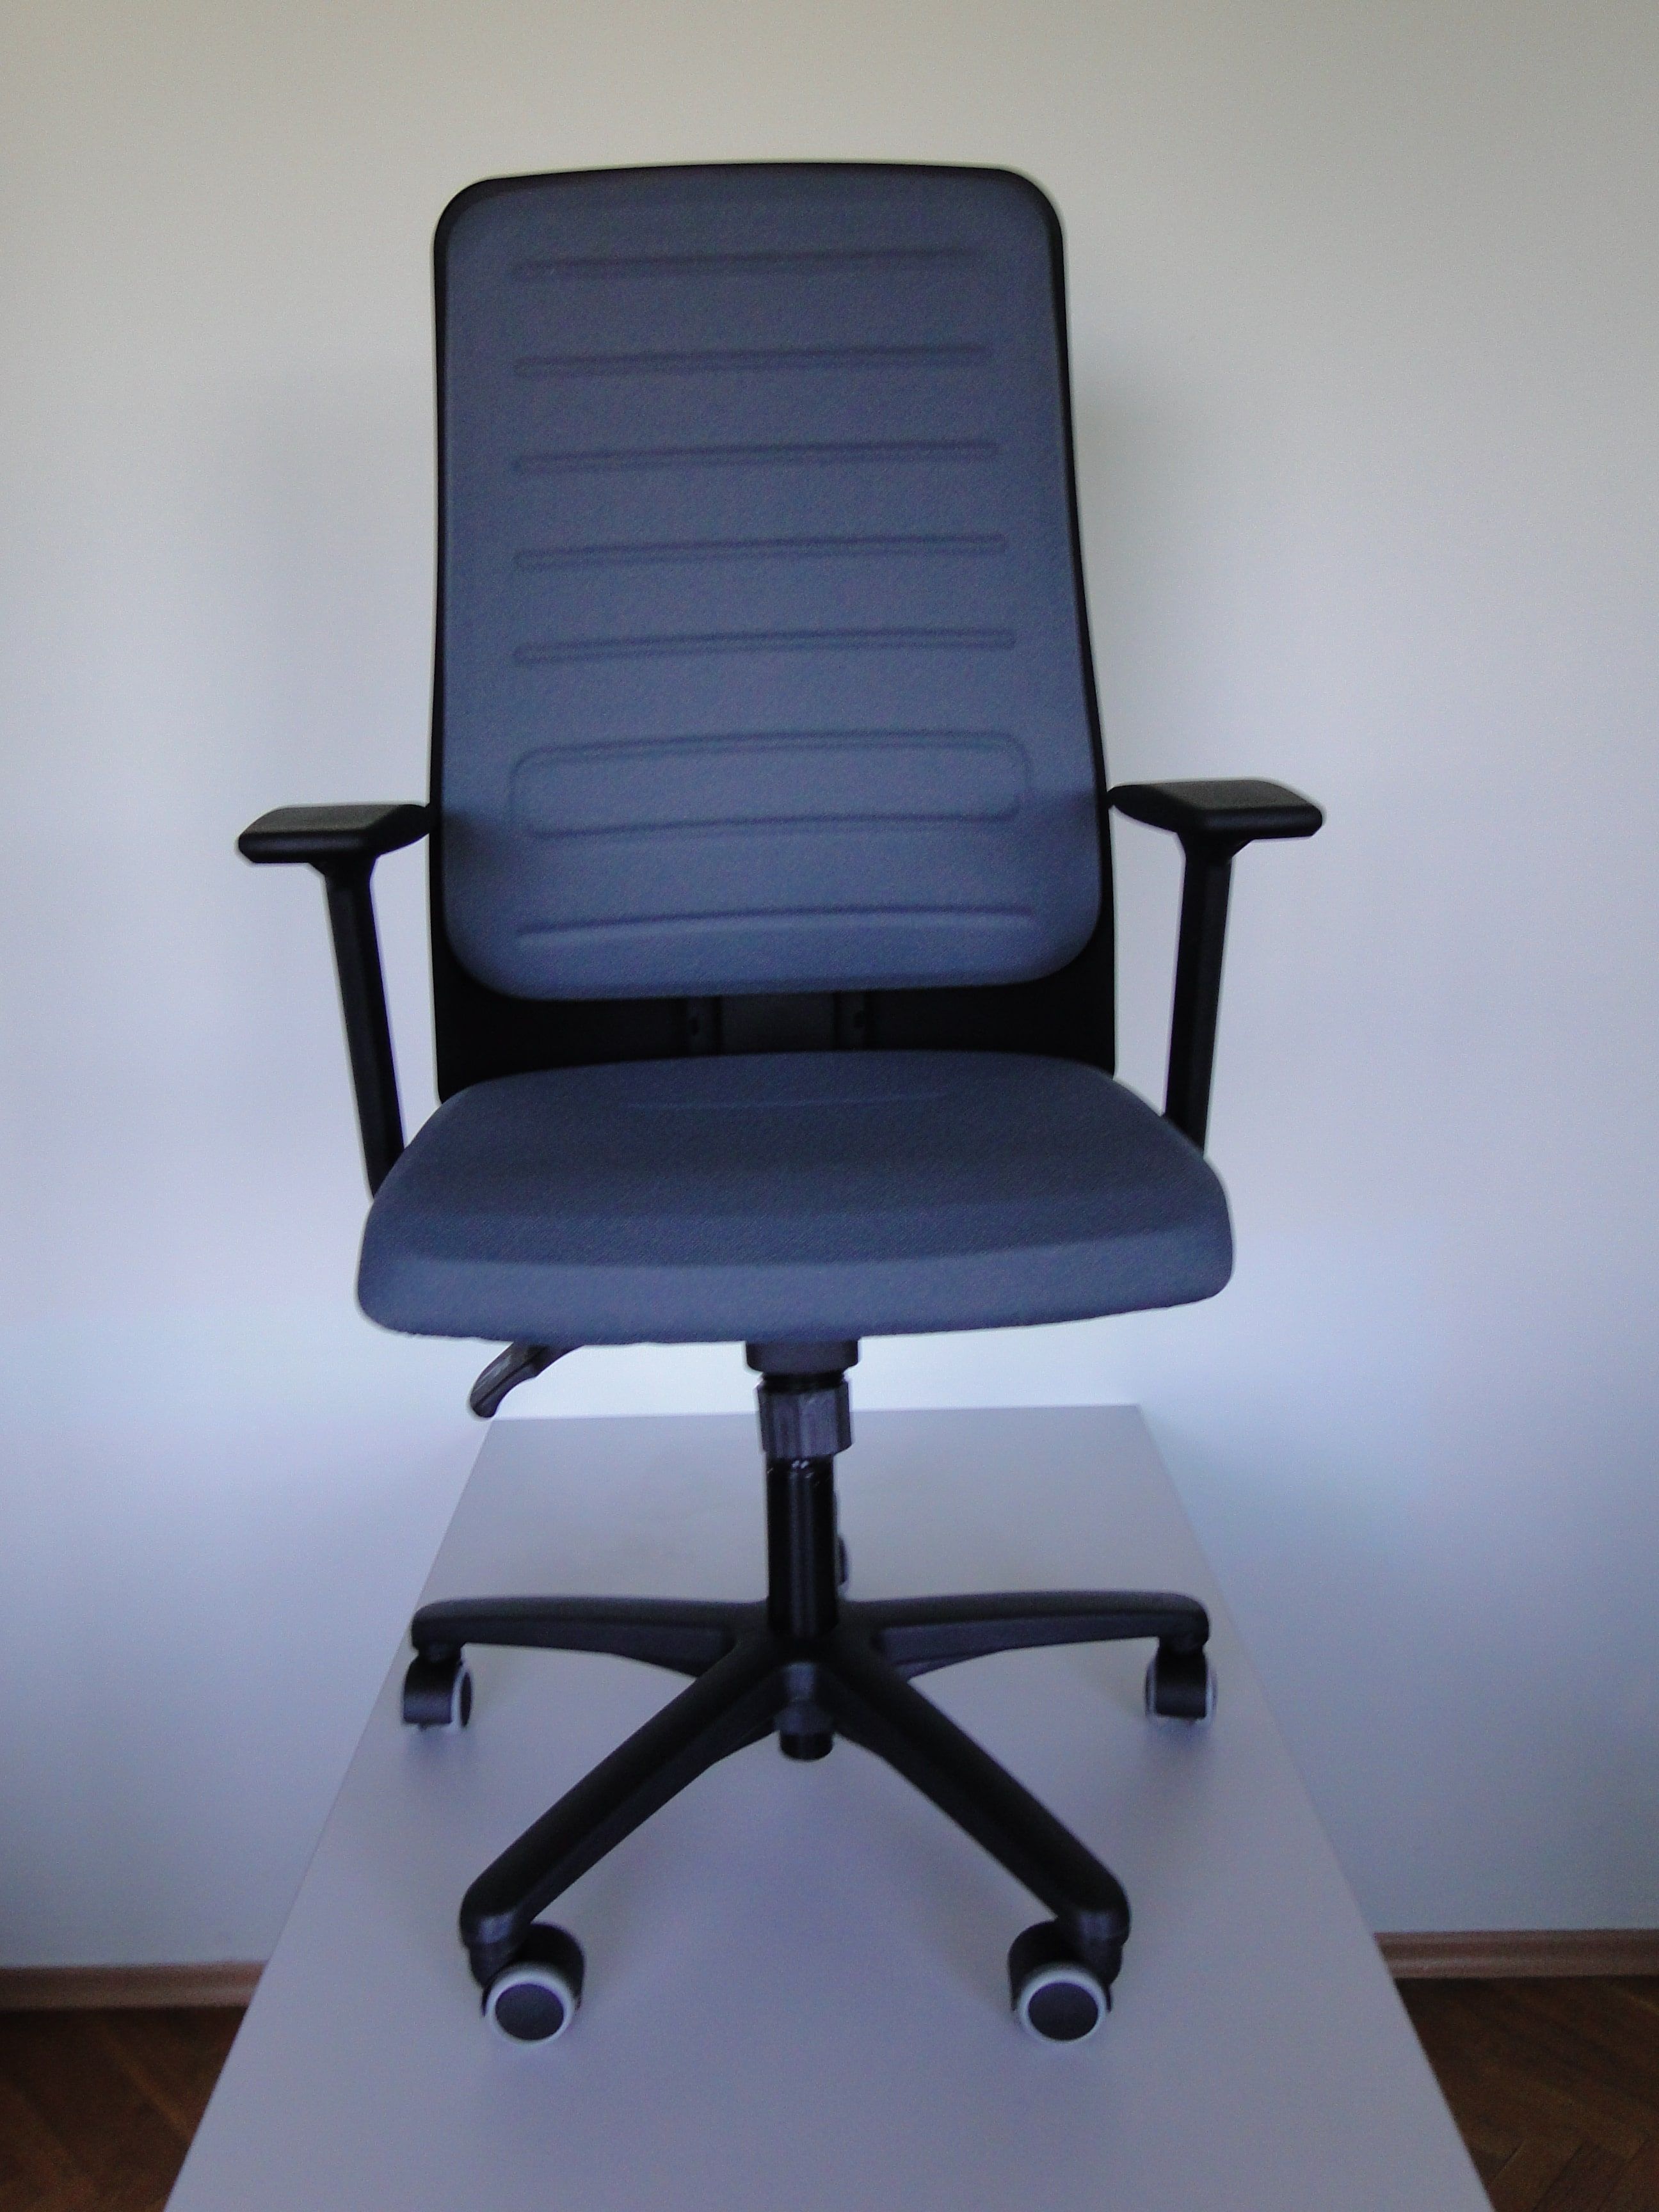 Офисное кресло Interstuhl Eccon plus 8 7152. С регулировкой высоты спинки и веса, с упором для поясницы.